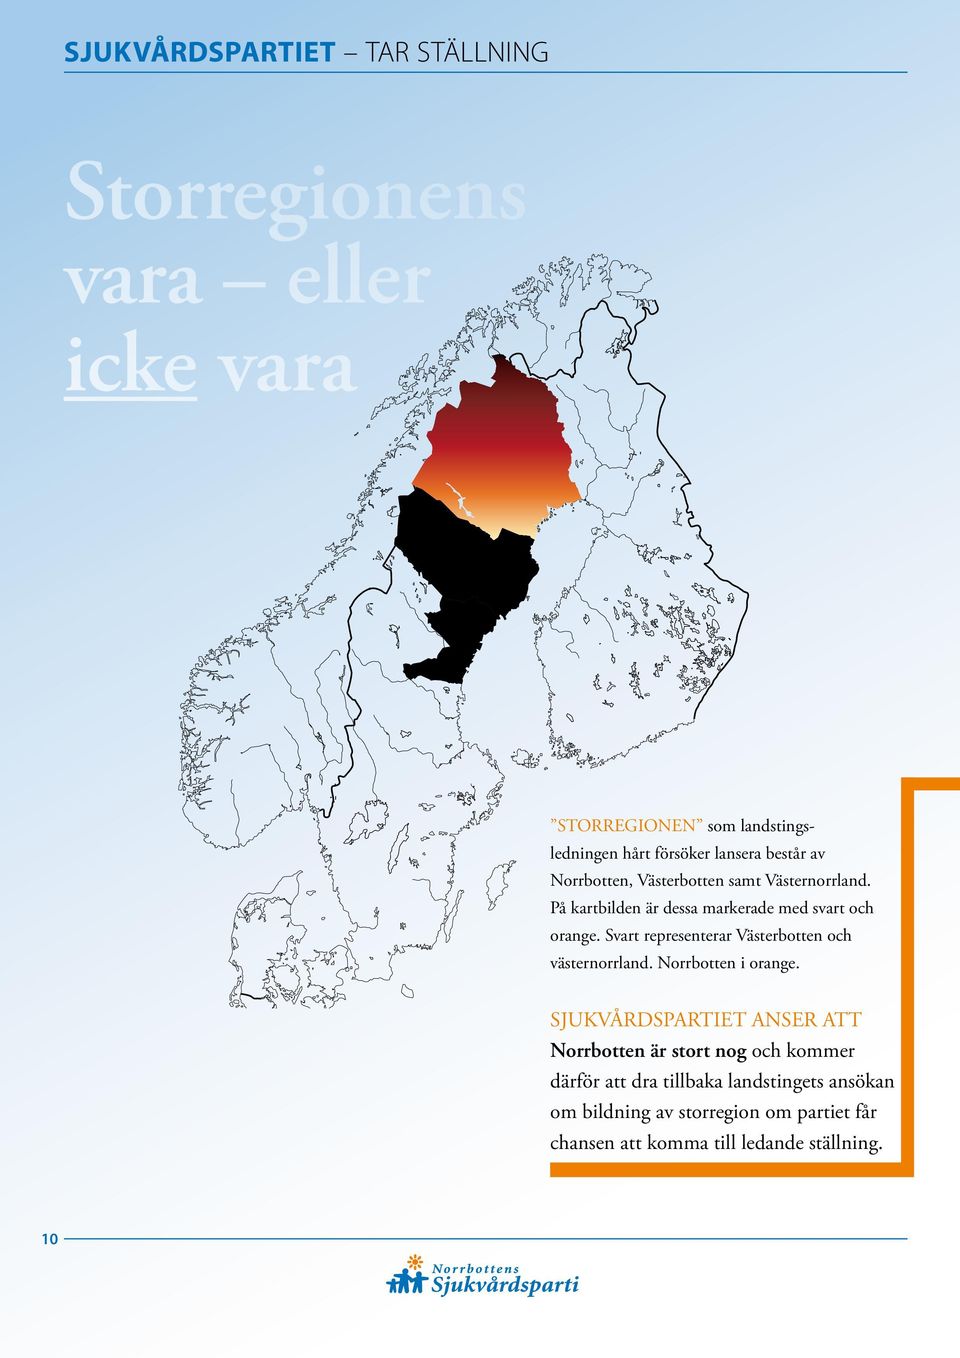 Svart representerar Västerbotten och västernorrland. Norrbotten i orange.